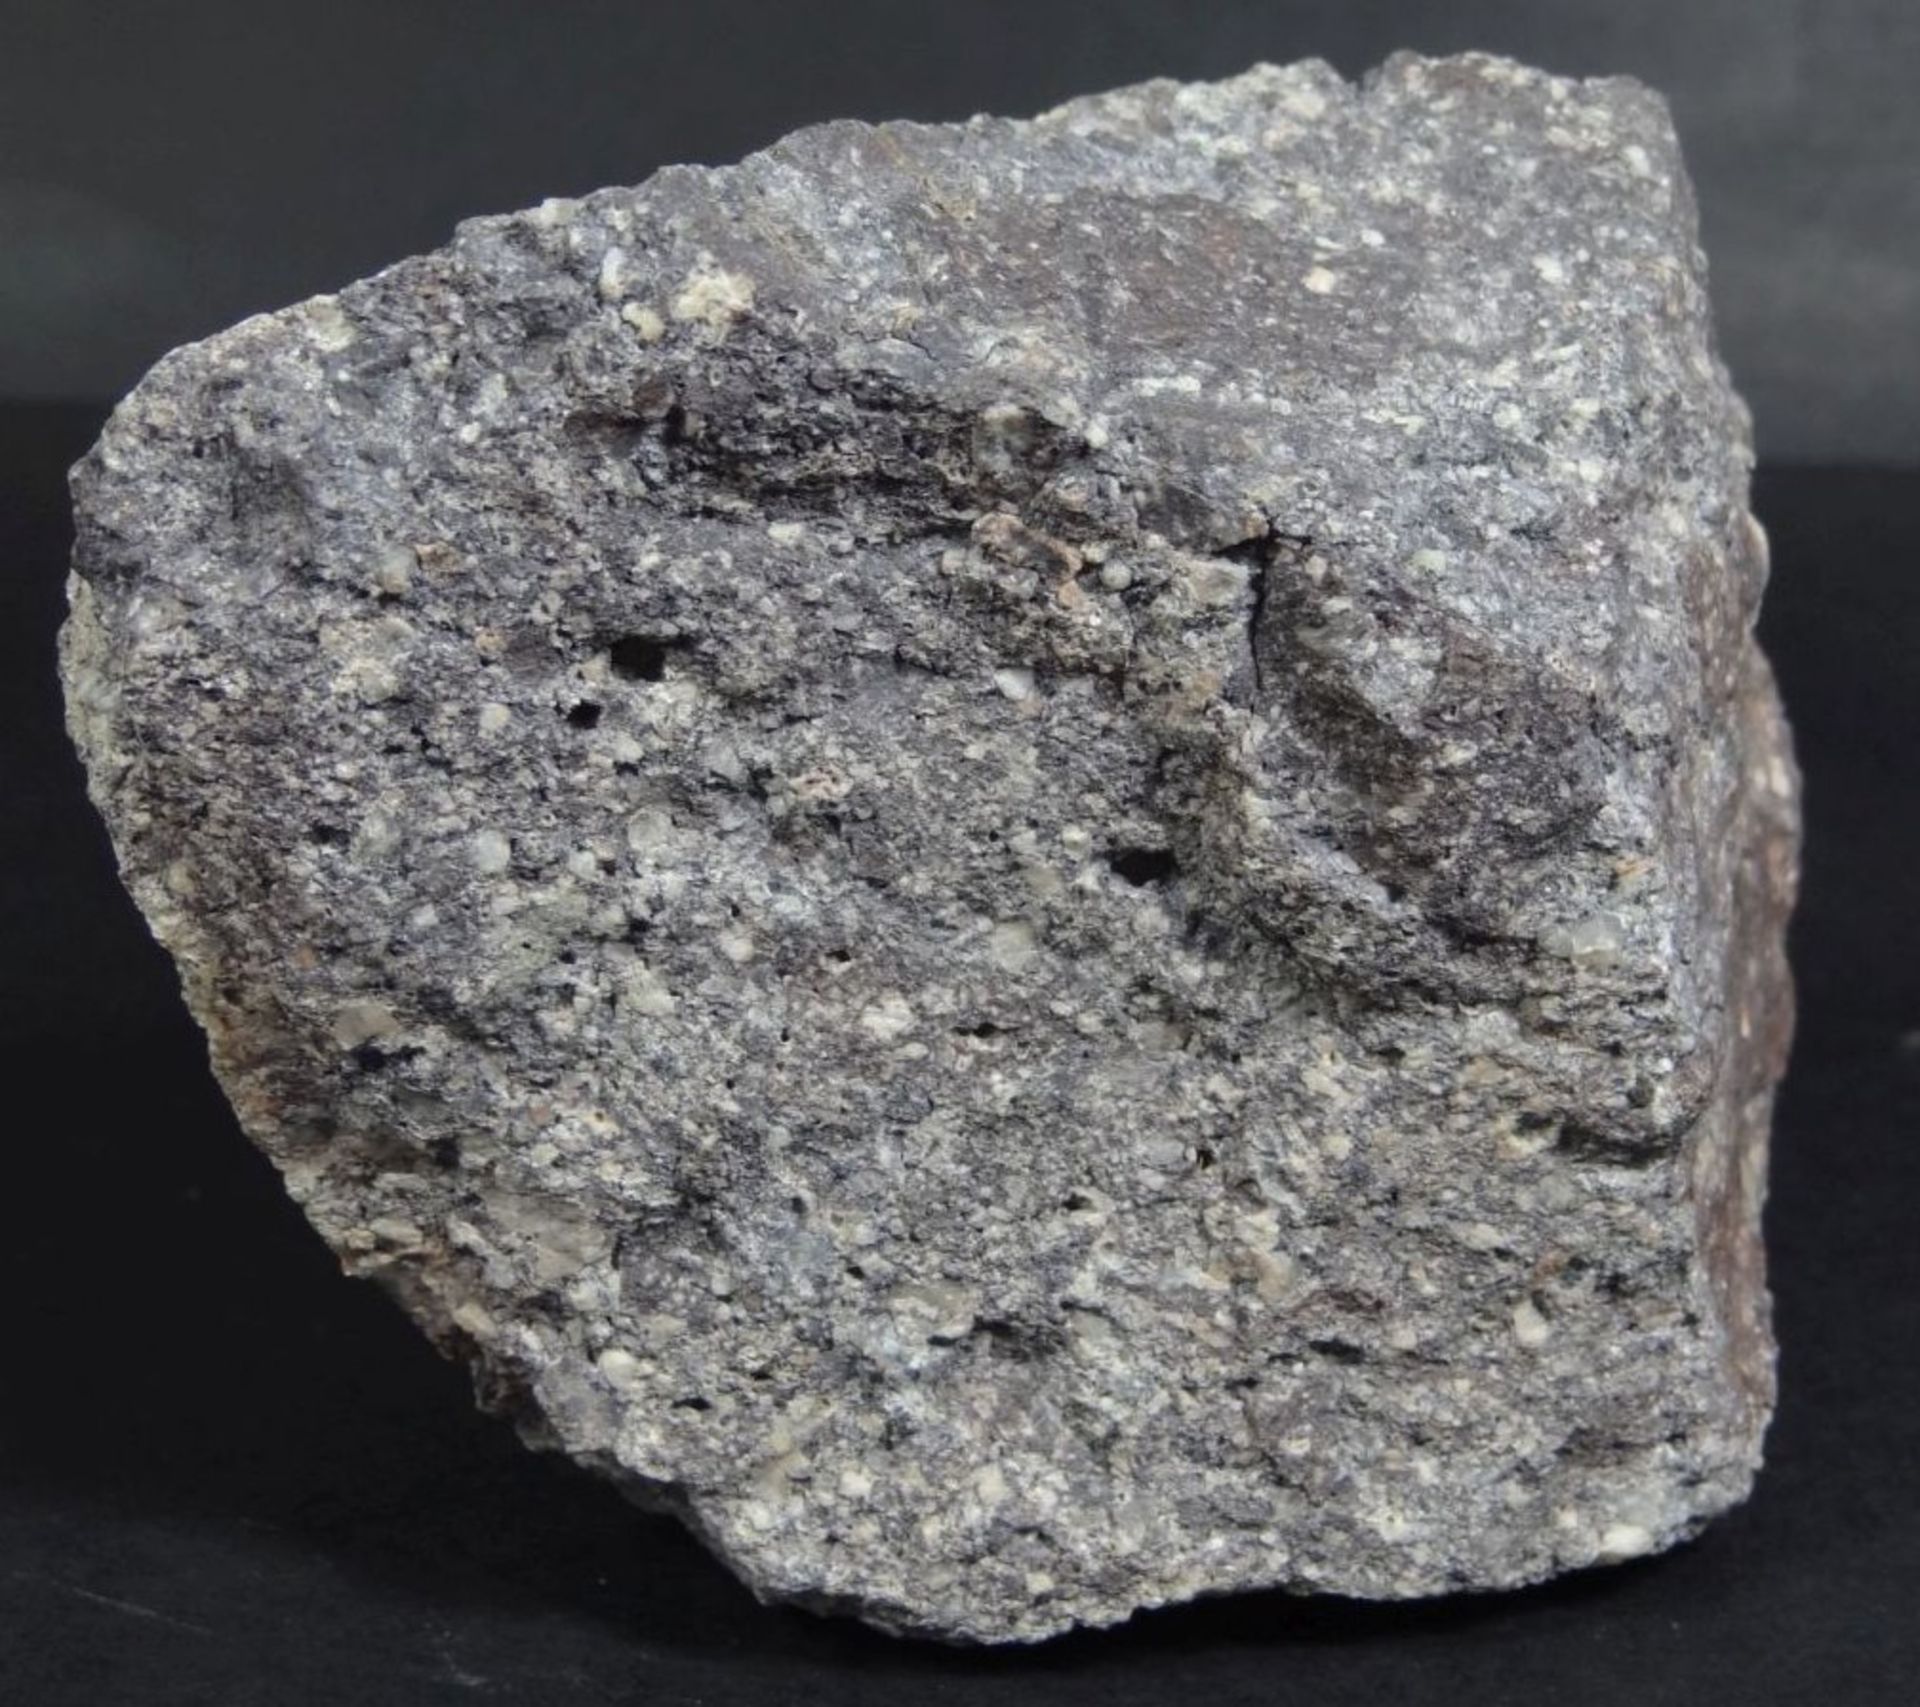 grosses Stück Mineral/Stein?, "Quarzphosphor" Fundort Bozen, 11x8x6 c - Bild 4 aus 4